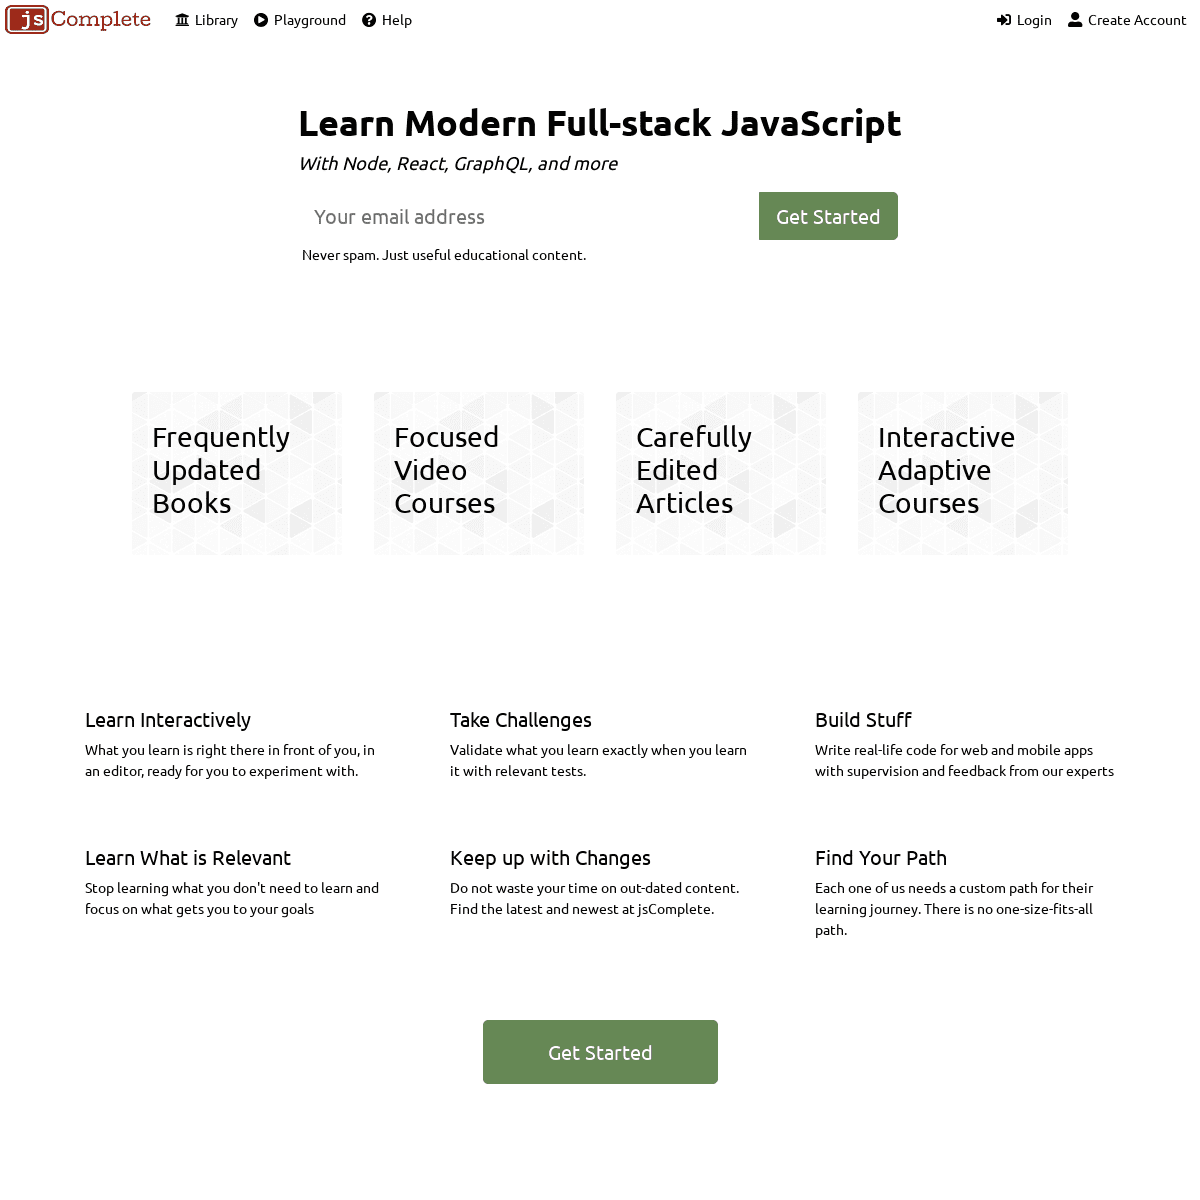 A complete backup of jscomplete.com